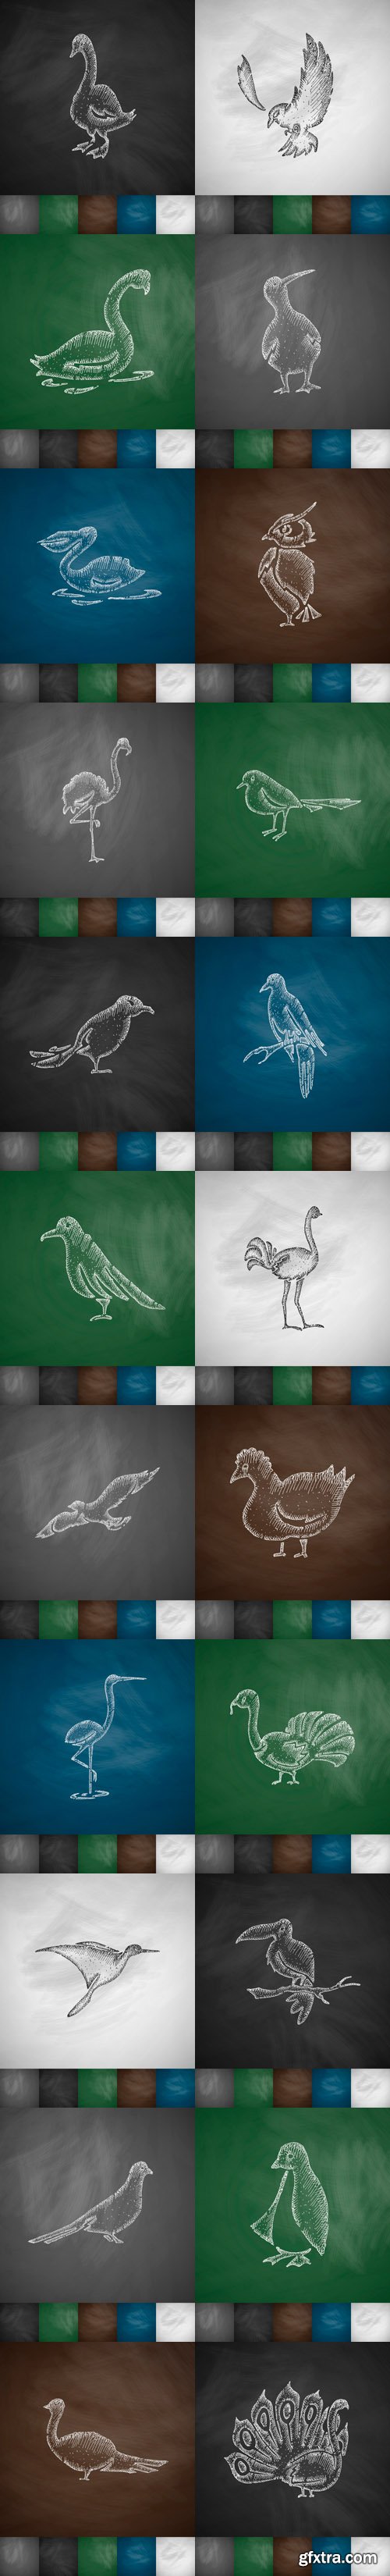 Hand drawn birds - Vectors A000029